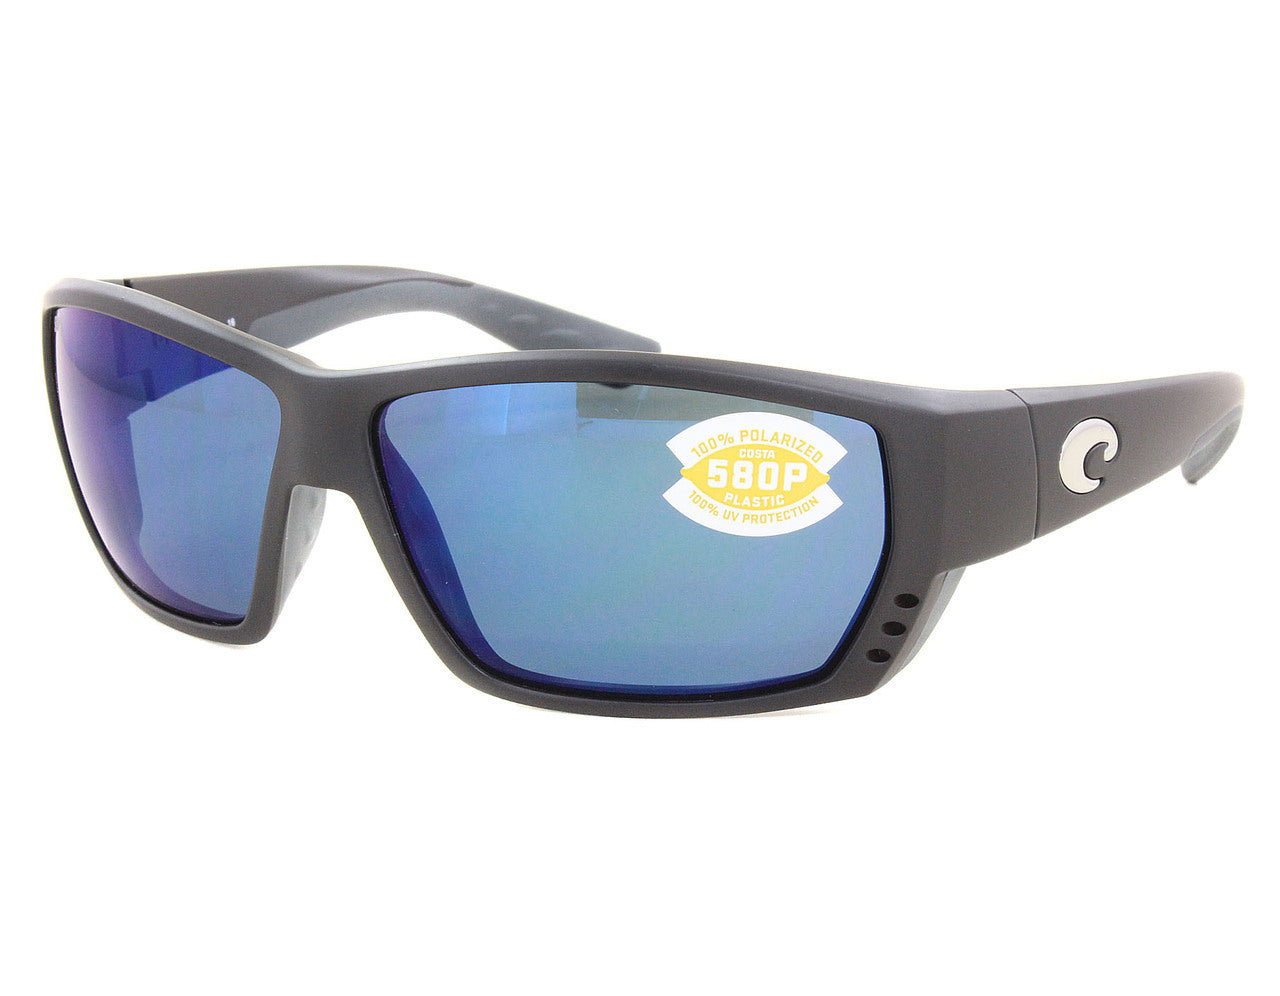 Costa Del Mar Tuna Alley Sunglasses MatteBlack Grey 580P